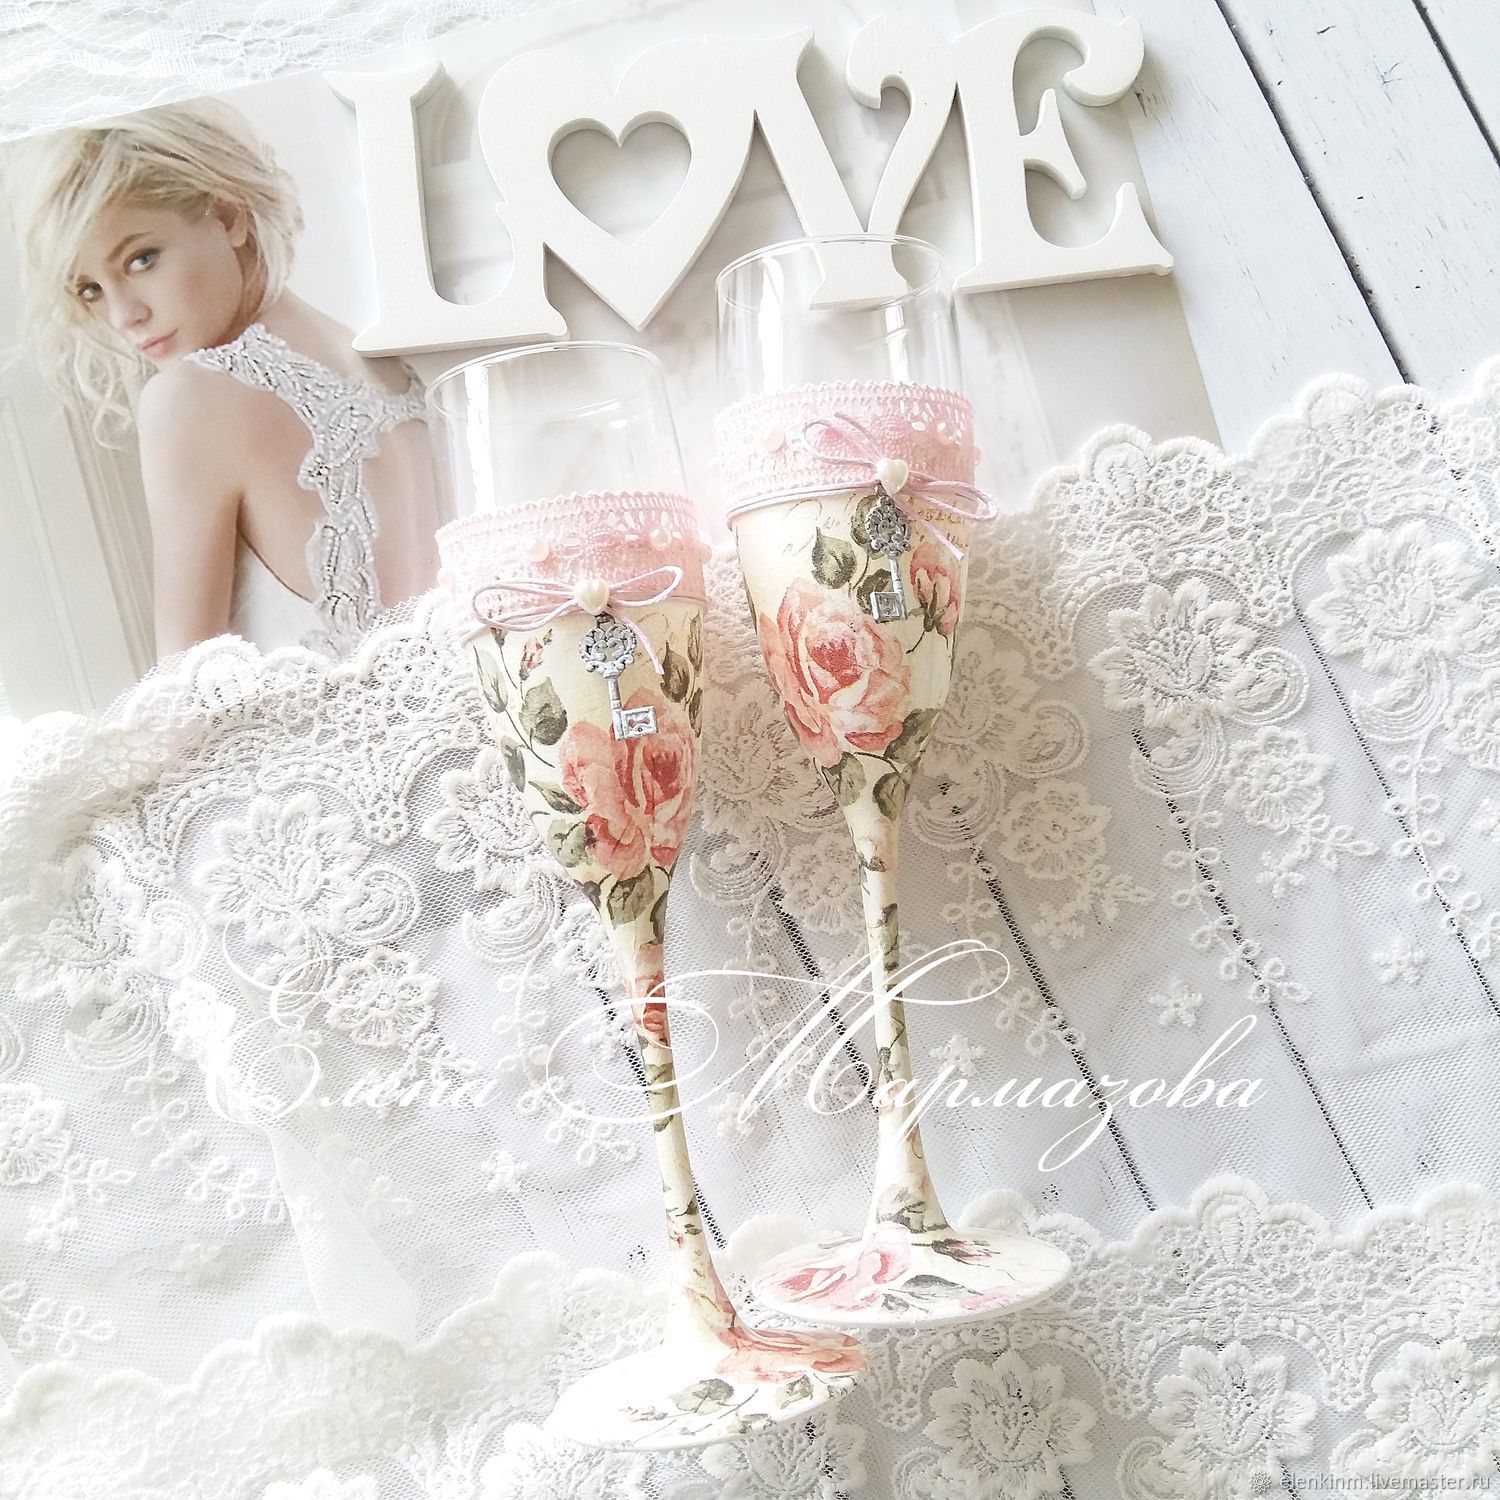 Свадьба шебби шик: Коллекция авторских товаров Свадьба в стиле Шебби-шик - Тишкова Кристина LoveStory